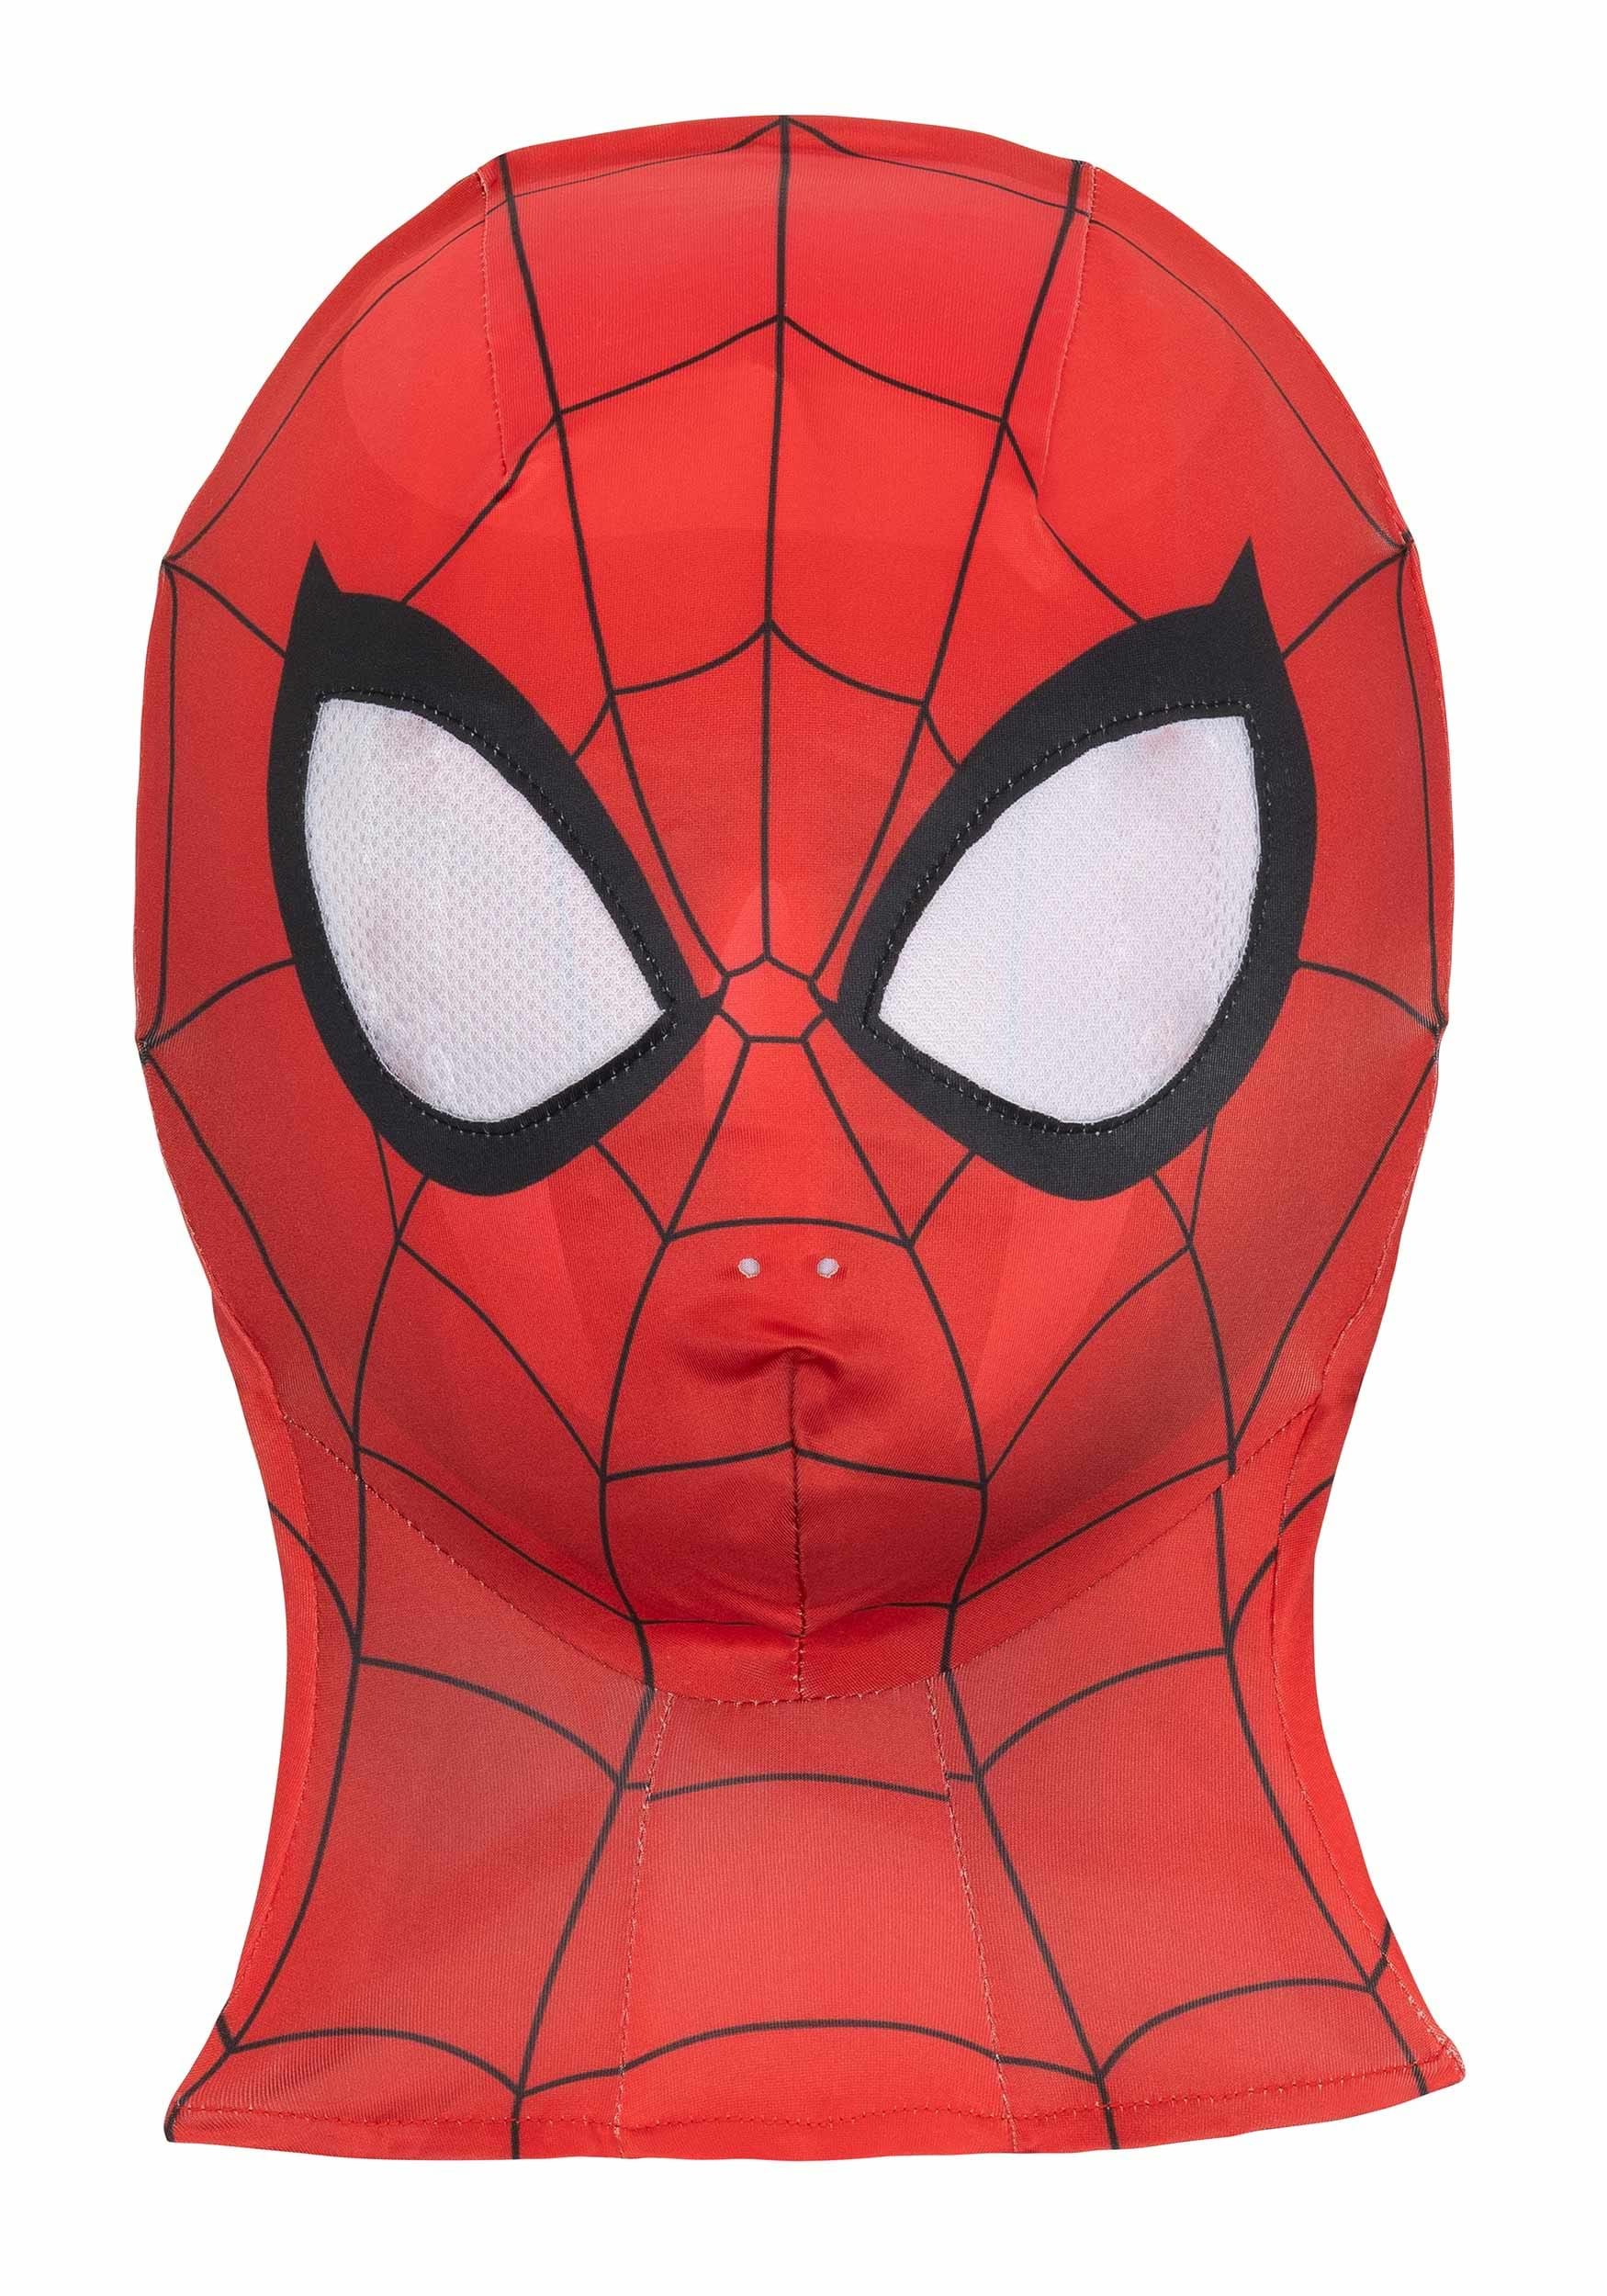 Spiderman Zentai -  Canada